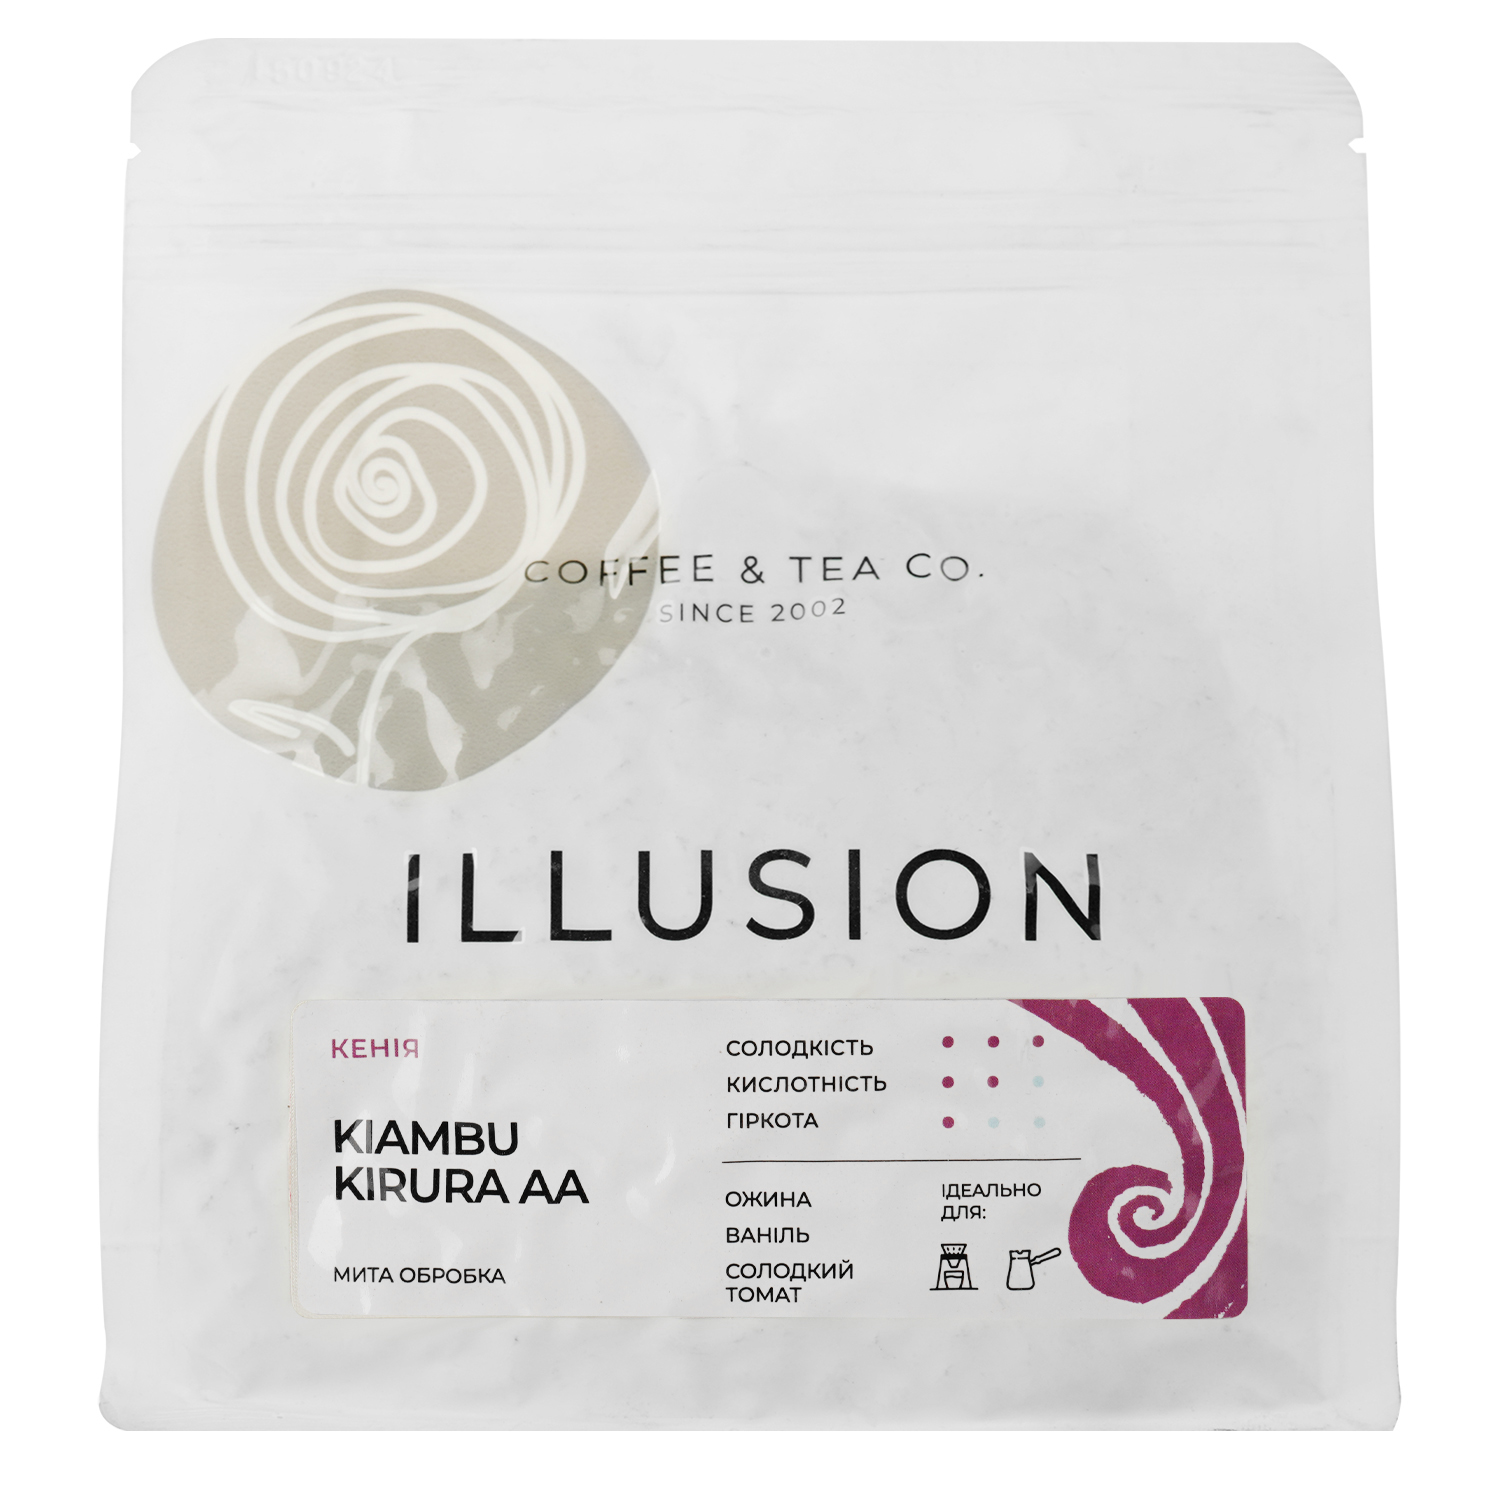 Кофе в зернах Illusion Kenya Kiambu Kirura AA (эспрессо), 200 г - фото 1